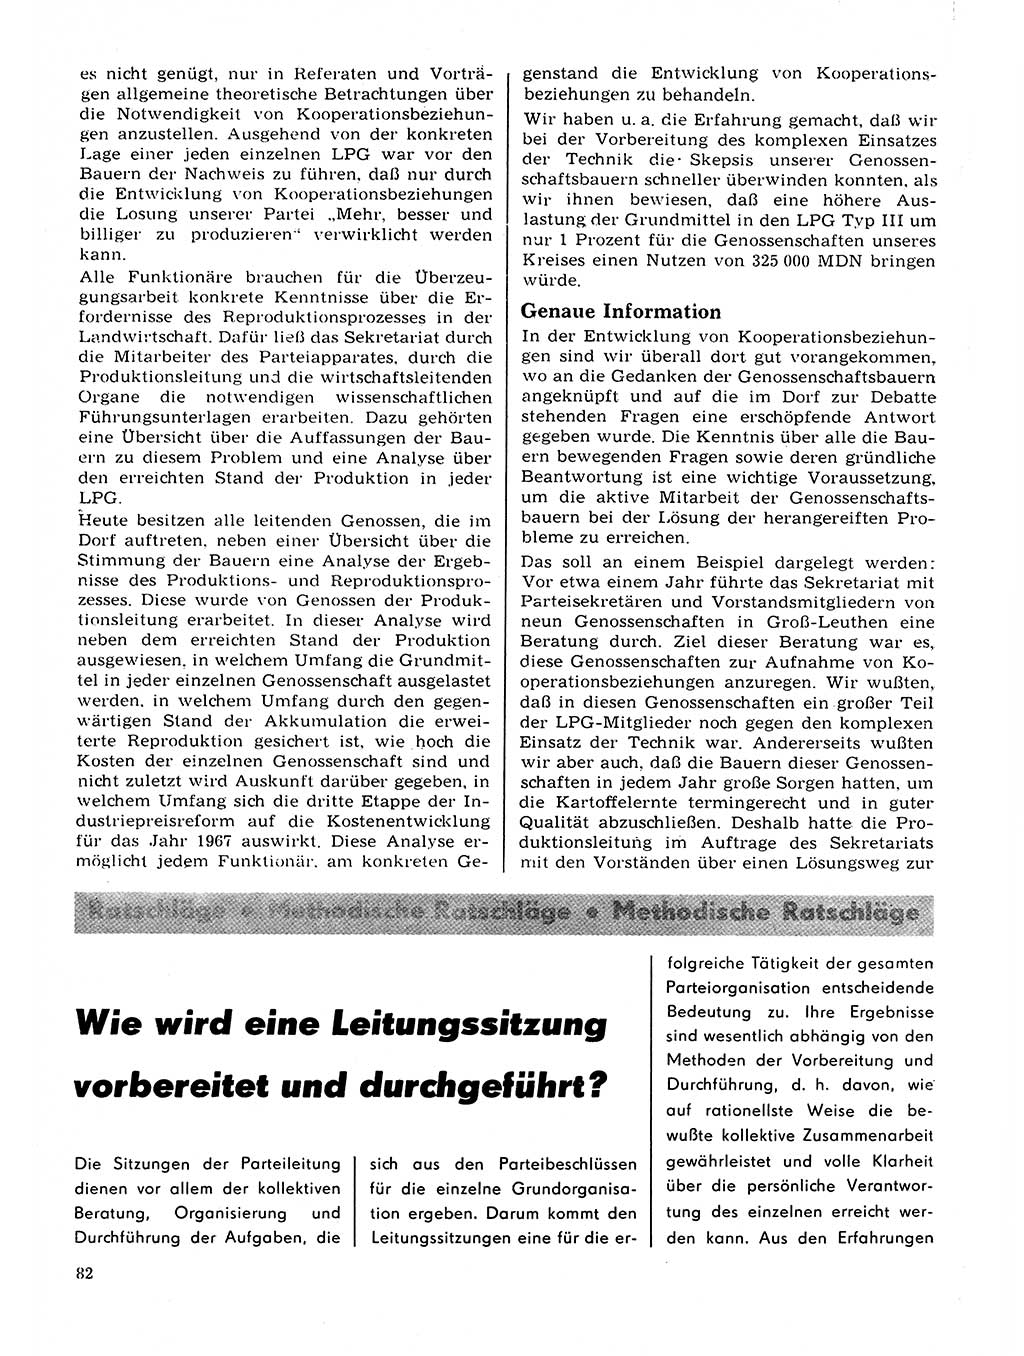 Neuer Weg (NW), Organ des Zentralkomitees (ZK) der SED (Sozialistische Einheitspartei Deutschlands) für Fragen des Parteilebens, 22. Jahrgang [Deutsche Demokratische Republik (DDR)] 1967, Seite 82 (NW ZK SED DDR 1967, S. 82)